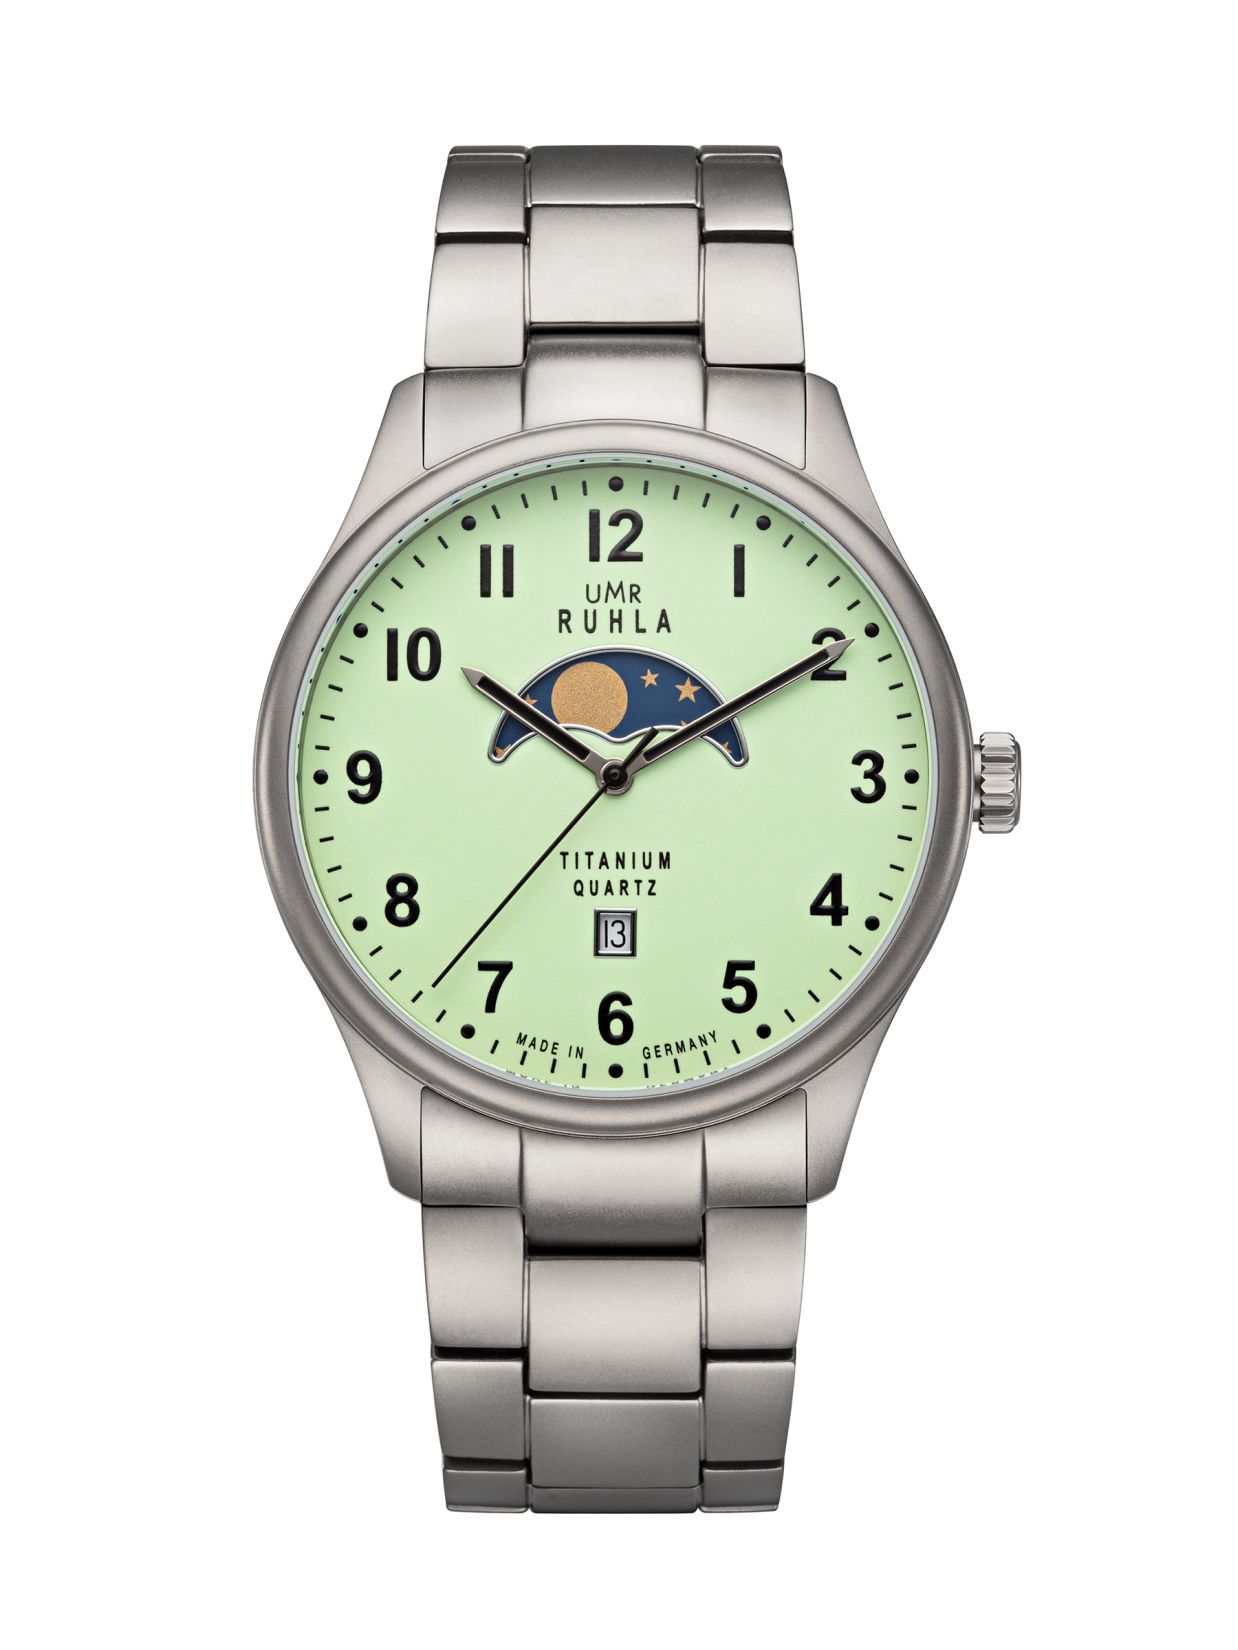 Uhren Manufaktur Ruhla - Mondphase-Uhr - Titan - Leuchtzifferblatt - Titanband - made in Germany